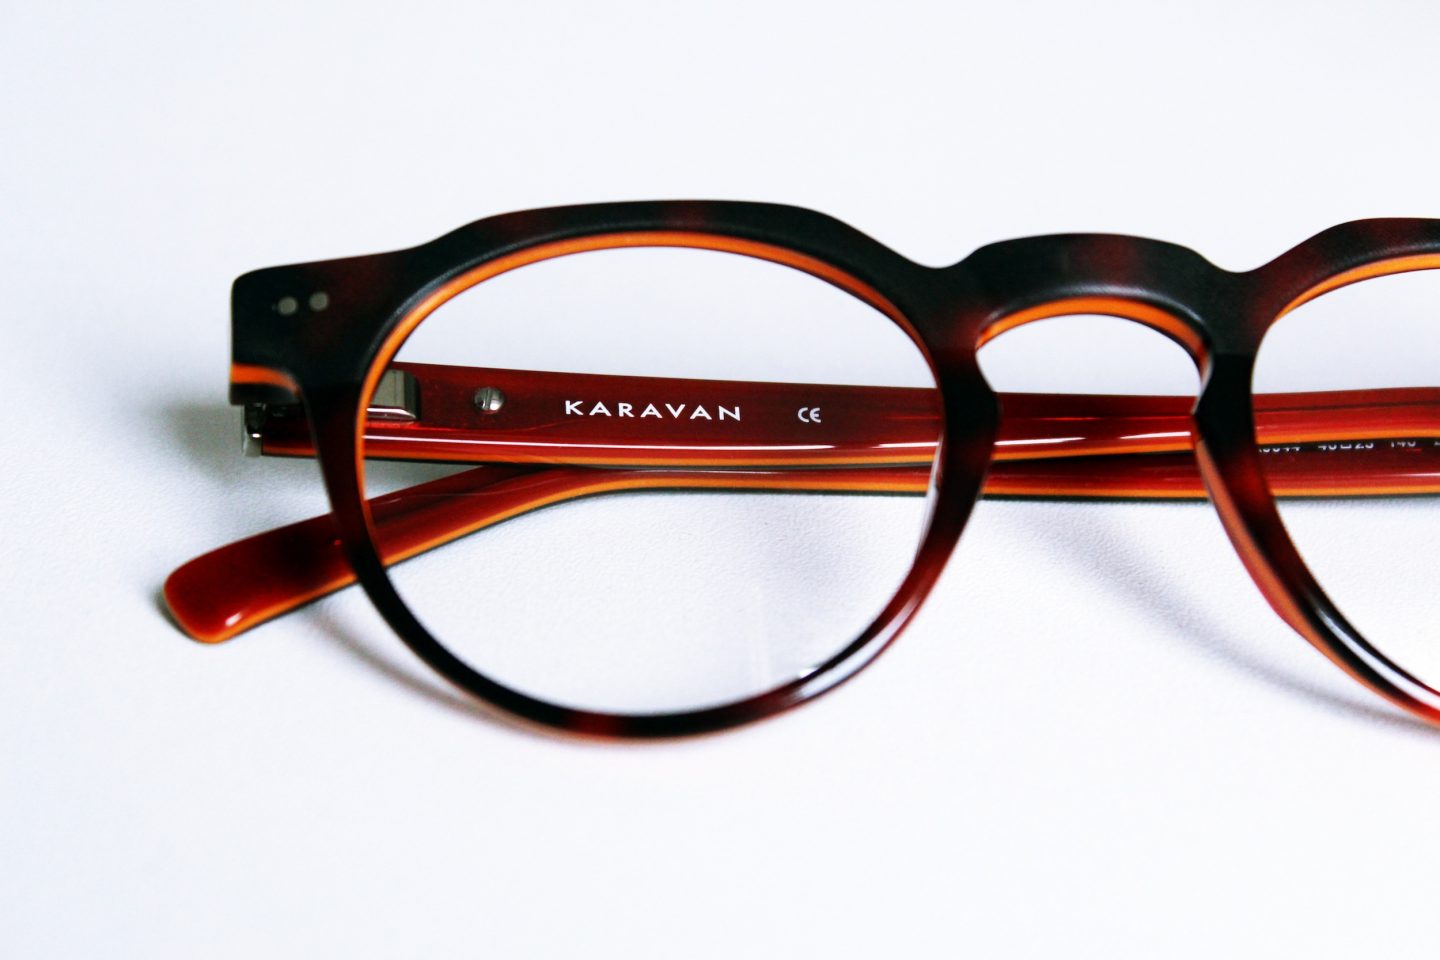 Les lunettes Karavan : Concours